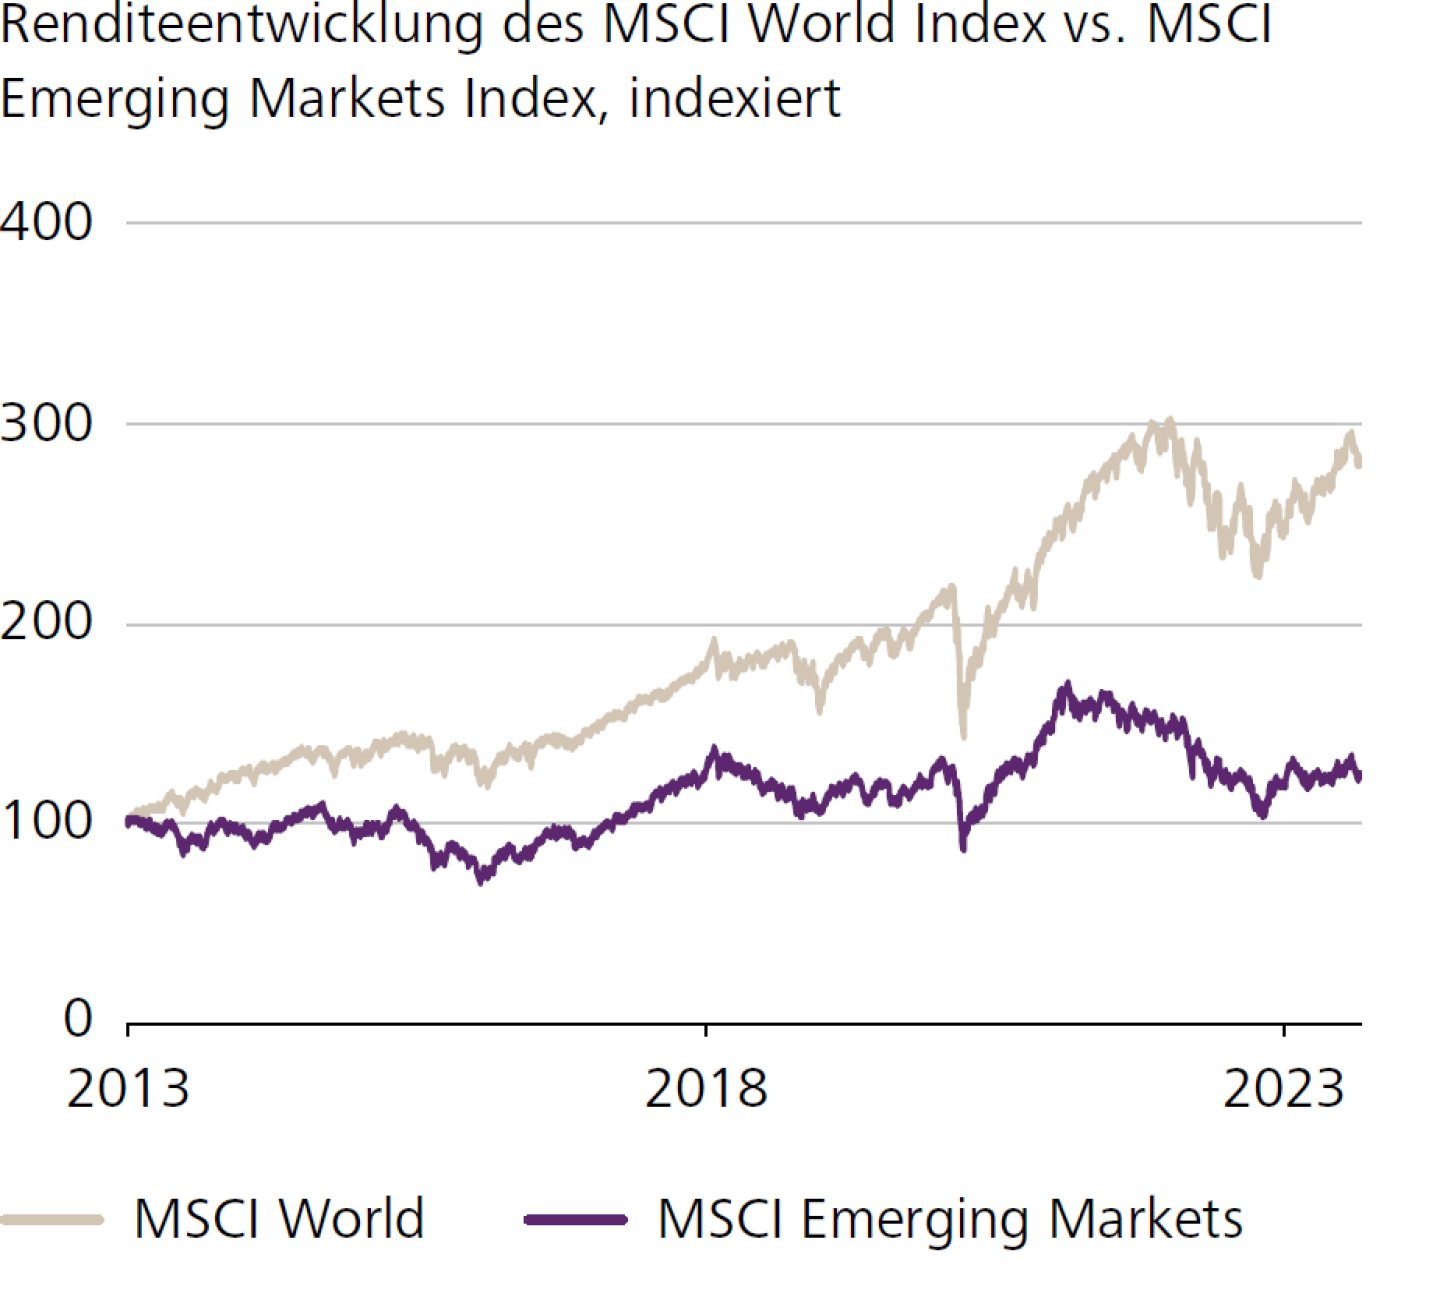 Renditeentwicklung des MSCI World Index vs. MSCI Emerging Markets Index, indexiert